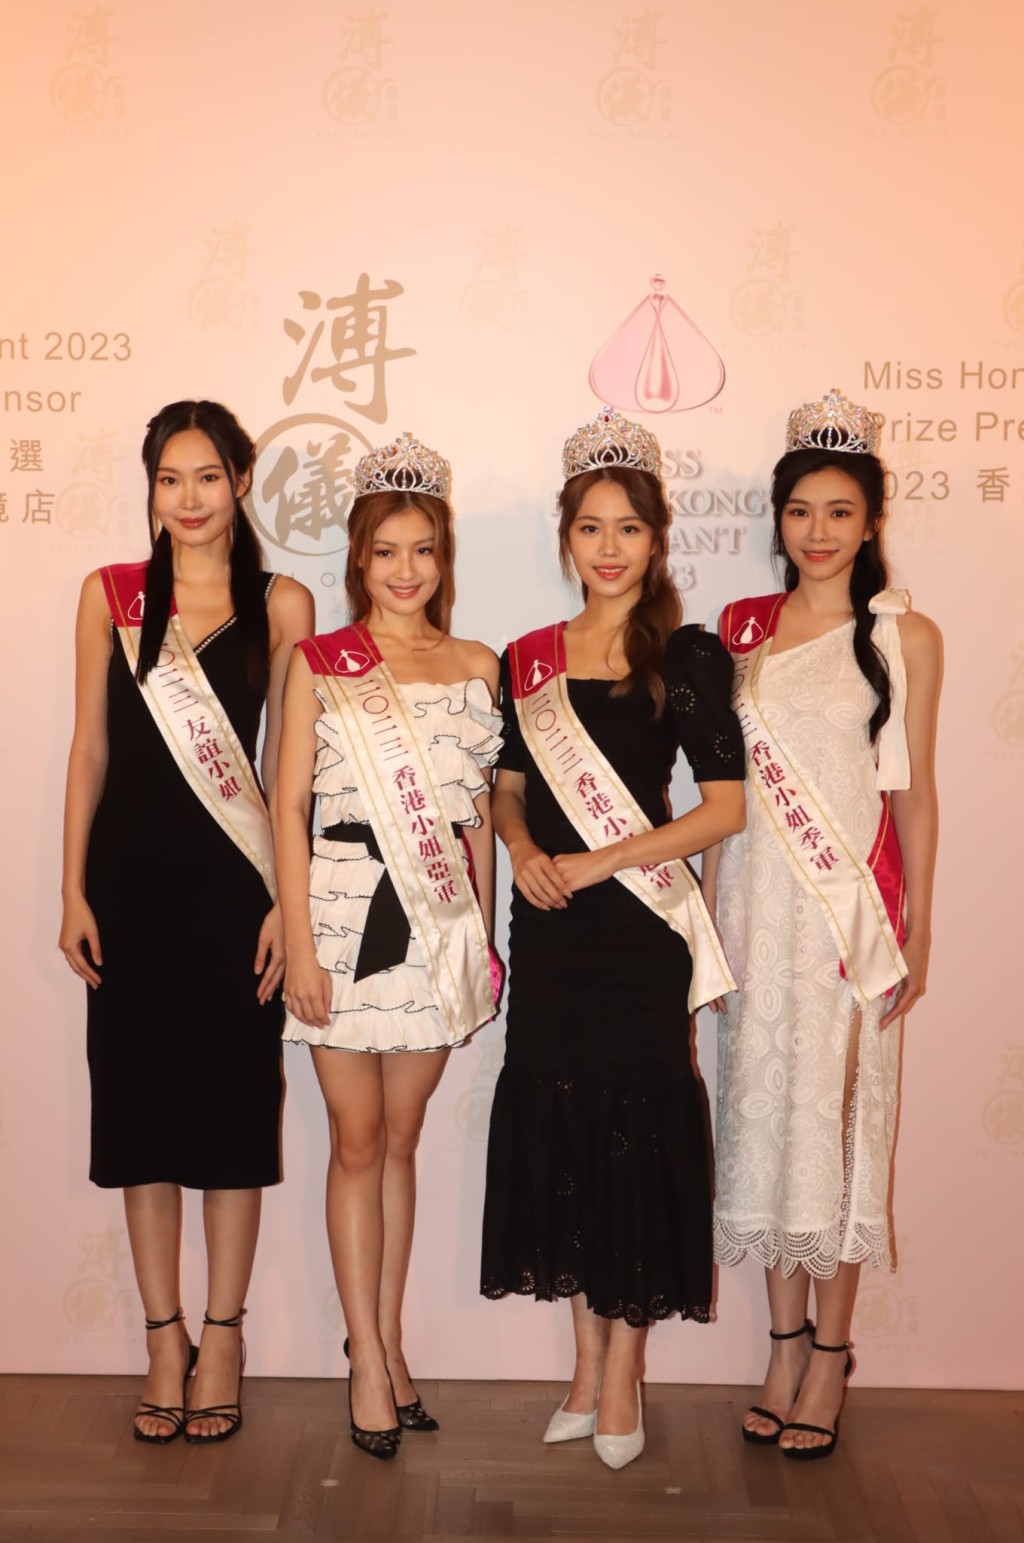 （左起）「友誼小姐」姜依宁、亞軍王怡然、冠軍莊子璇及季軍王敏慈出席活動。